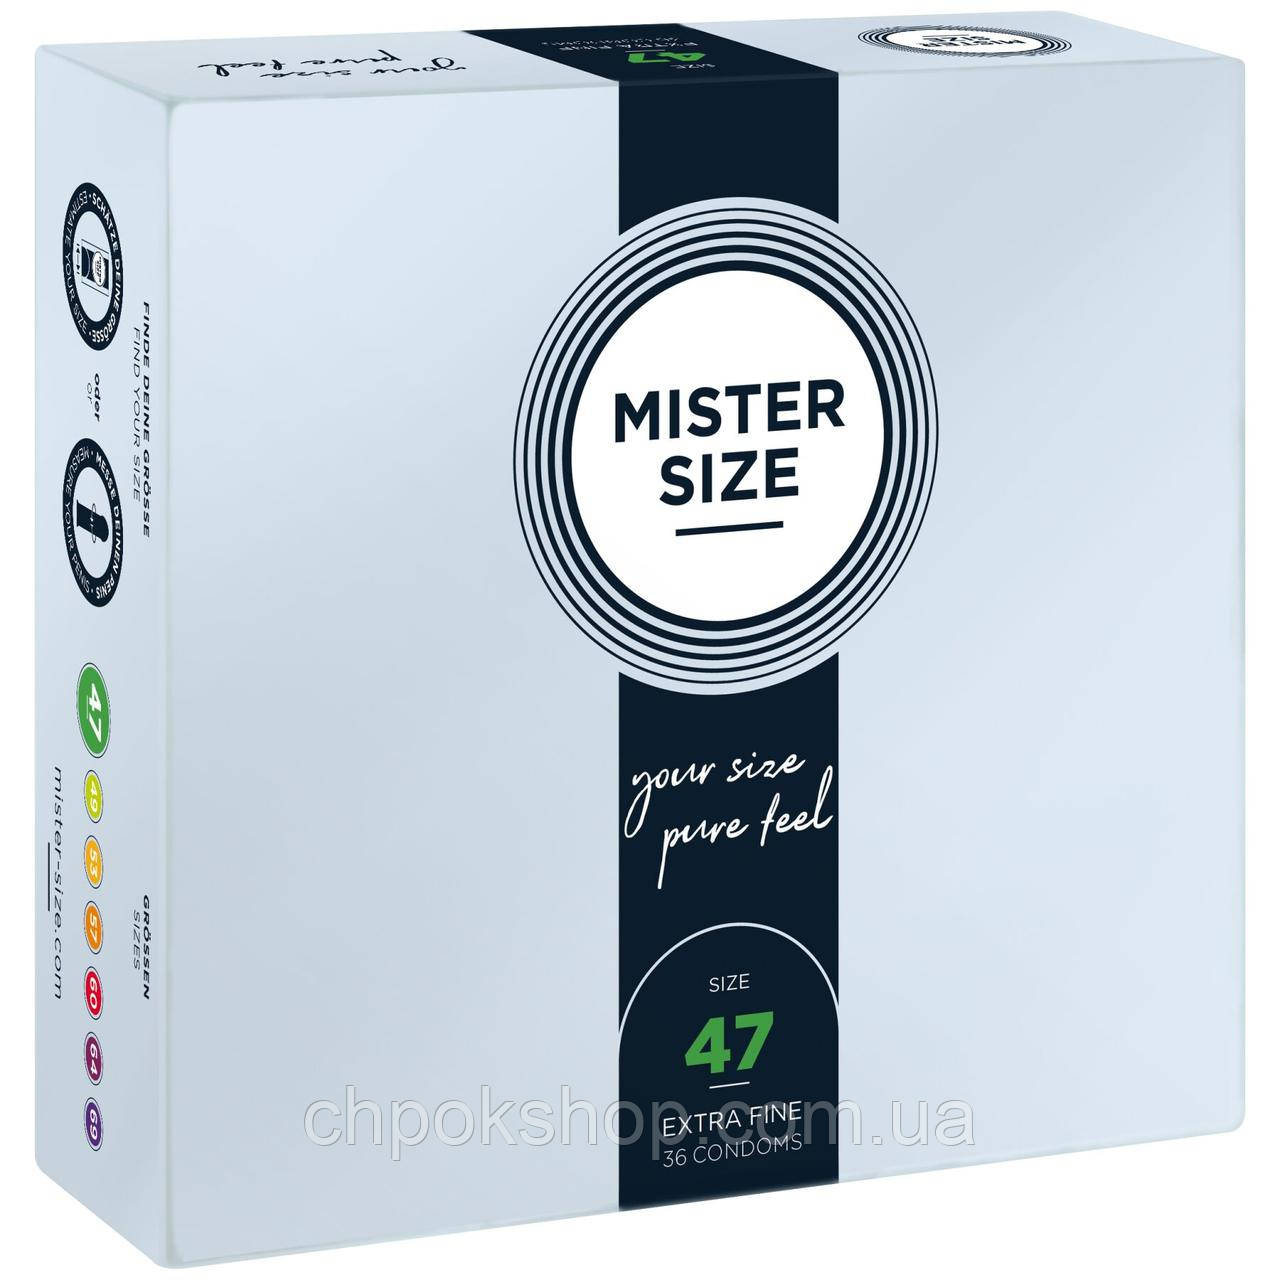 Презервативи Mister Size — pure feel — 47 (36 condoms), товщина 0,05 мм